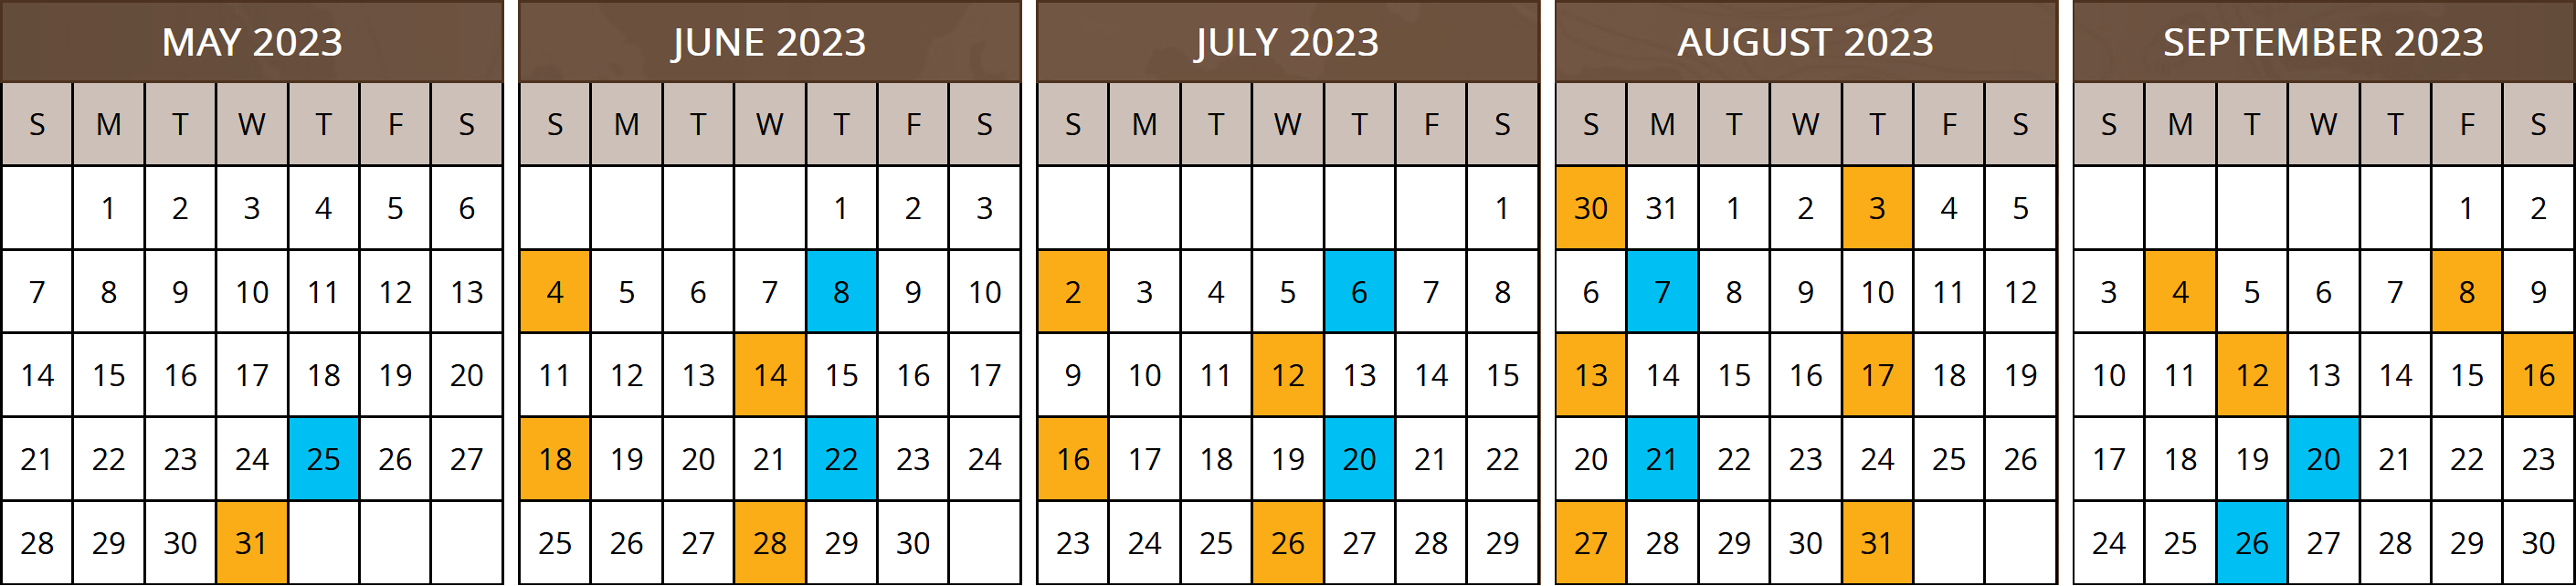 2023 Departure Dates